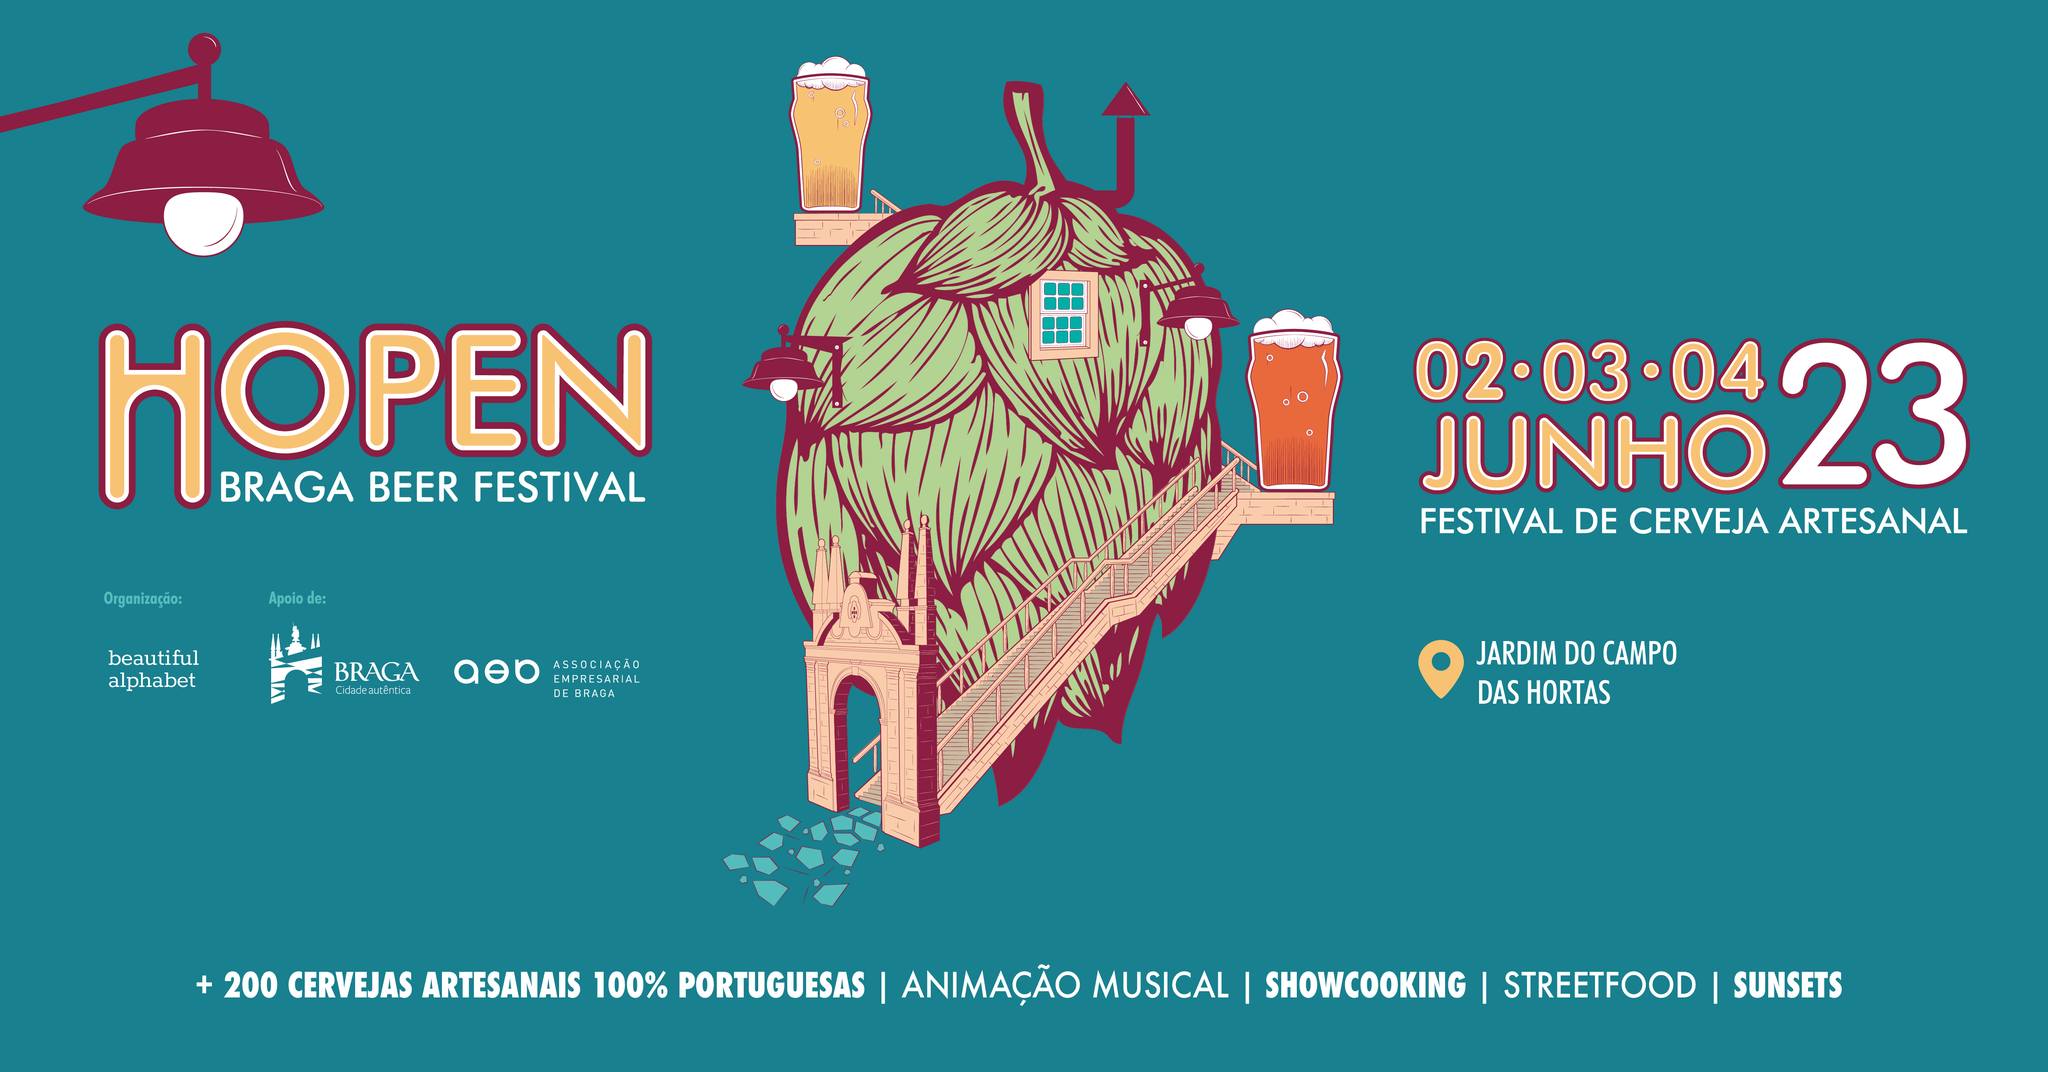 HOPEN - Braga Beer Festival '23